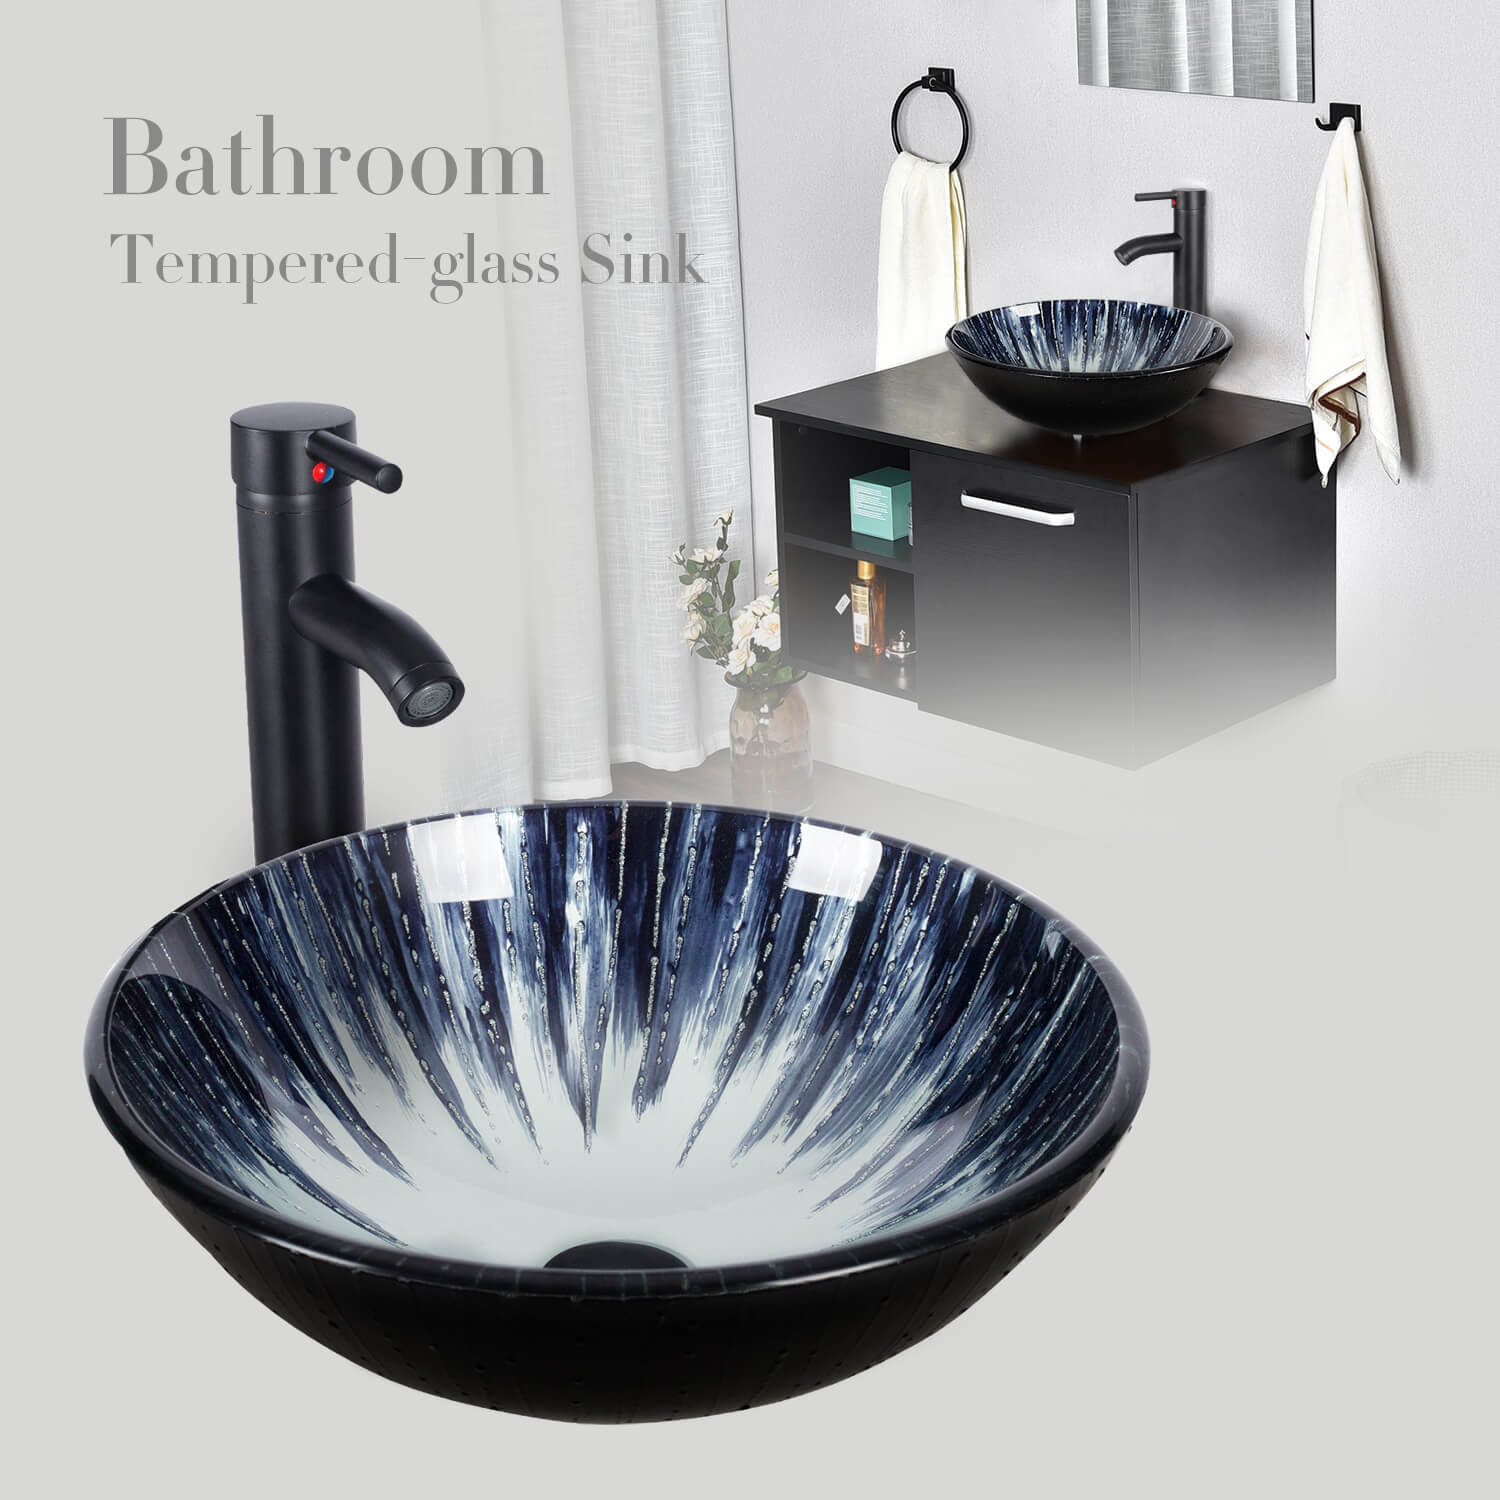 Elecwish Dark Blue Round Bathroom Vessel Sink BG1003 display scene